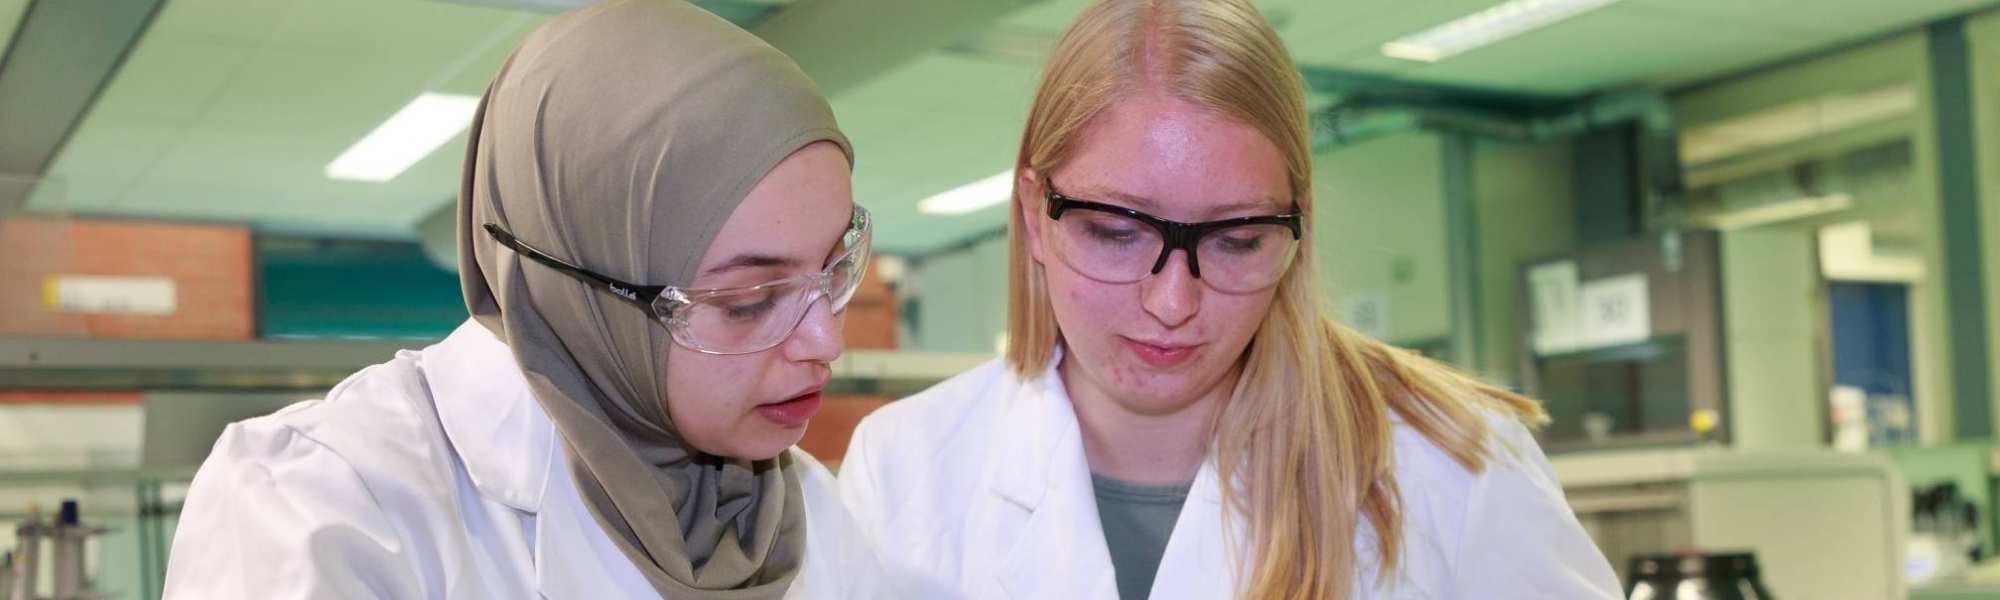 Studenten master Molecular Life Sciences Lisan Scholten en Nouhaila Belkassem tijdens een praktijkles op het lab